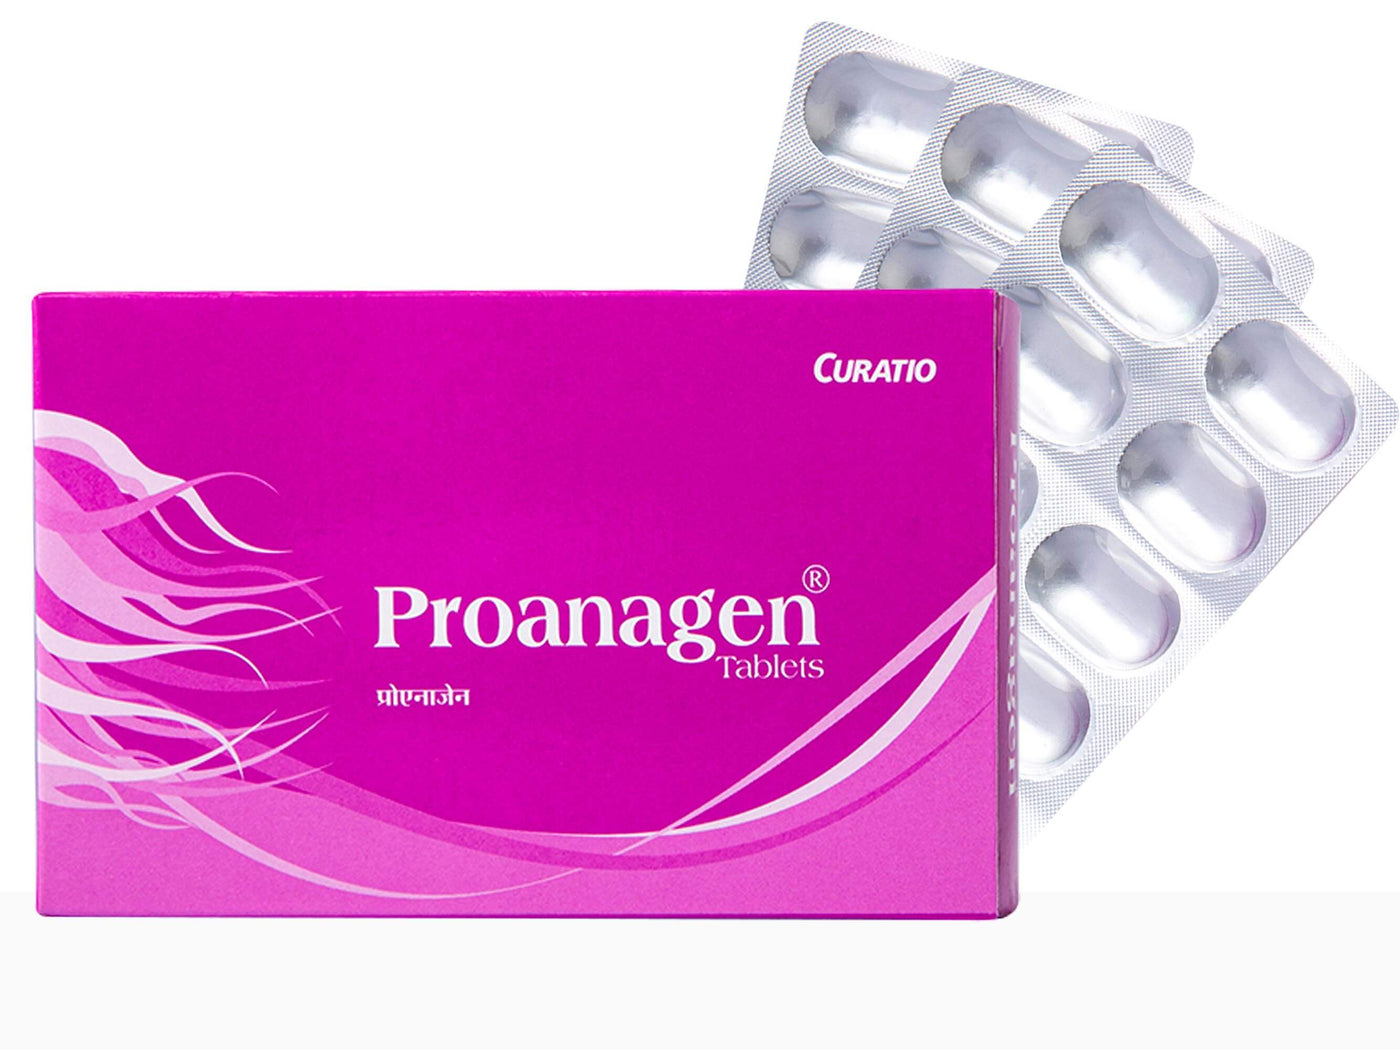 Curatio Proanagen Tablets - Clinikally